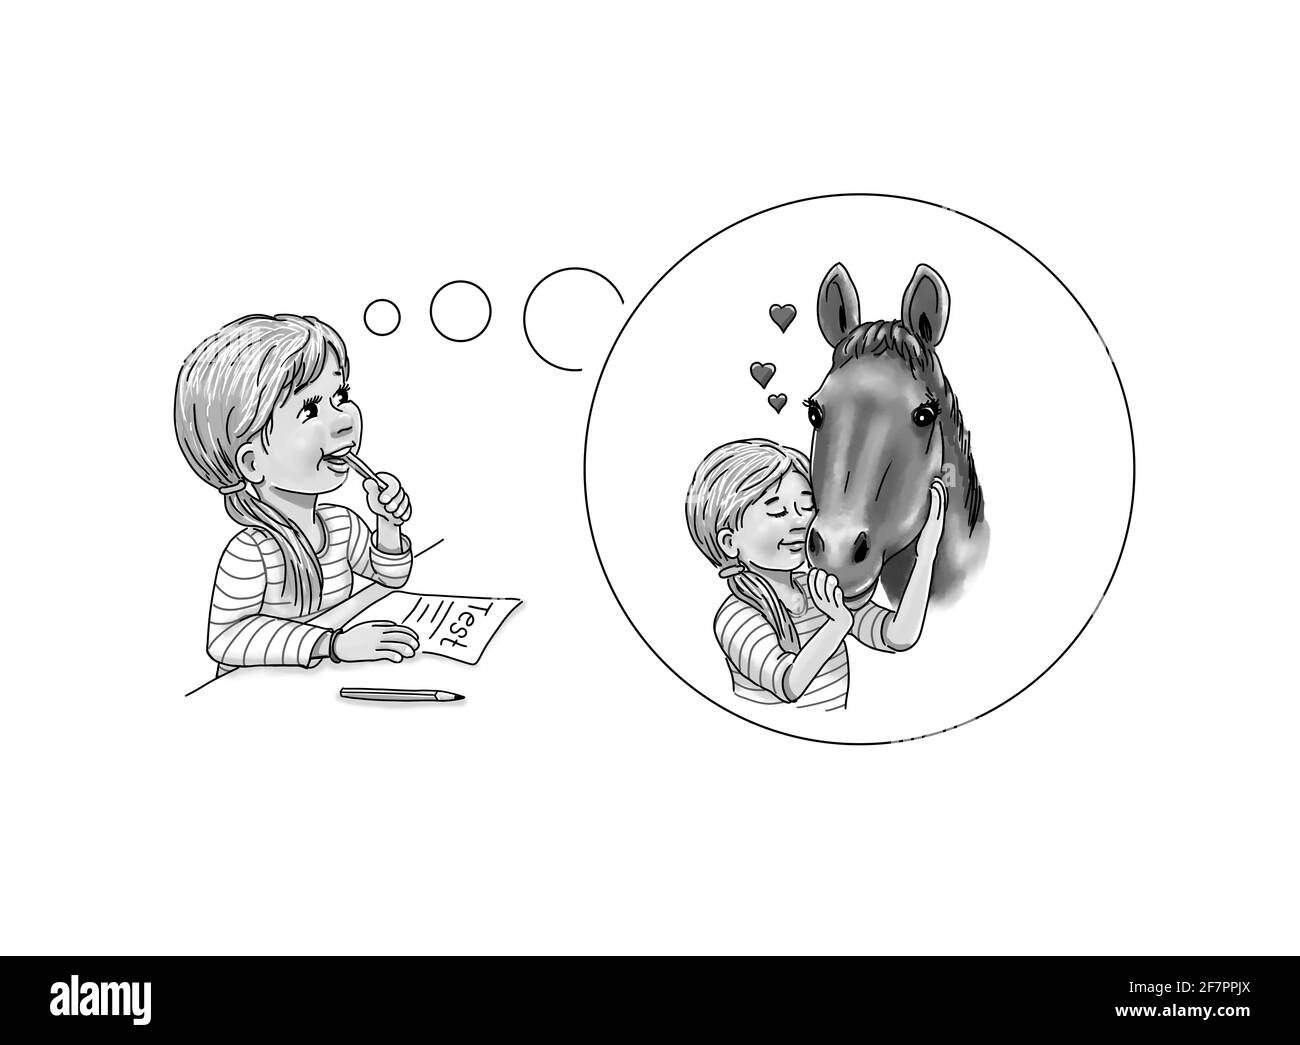 Mädchen Student Schulmädchen Test denkt über Gedanken Blase Phantasie Fantasie Pferd umarmen wenig Herz Kraft Tier helfen, lernen Stress zu unterstützen Überwinden Stockfoto